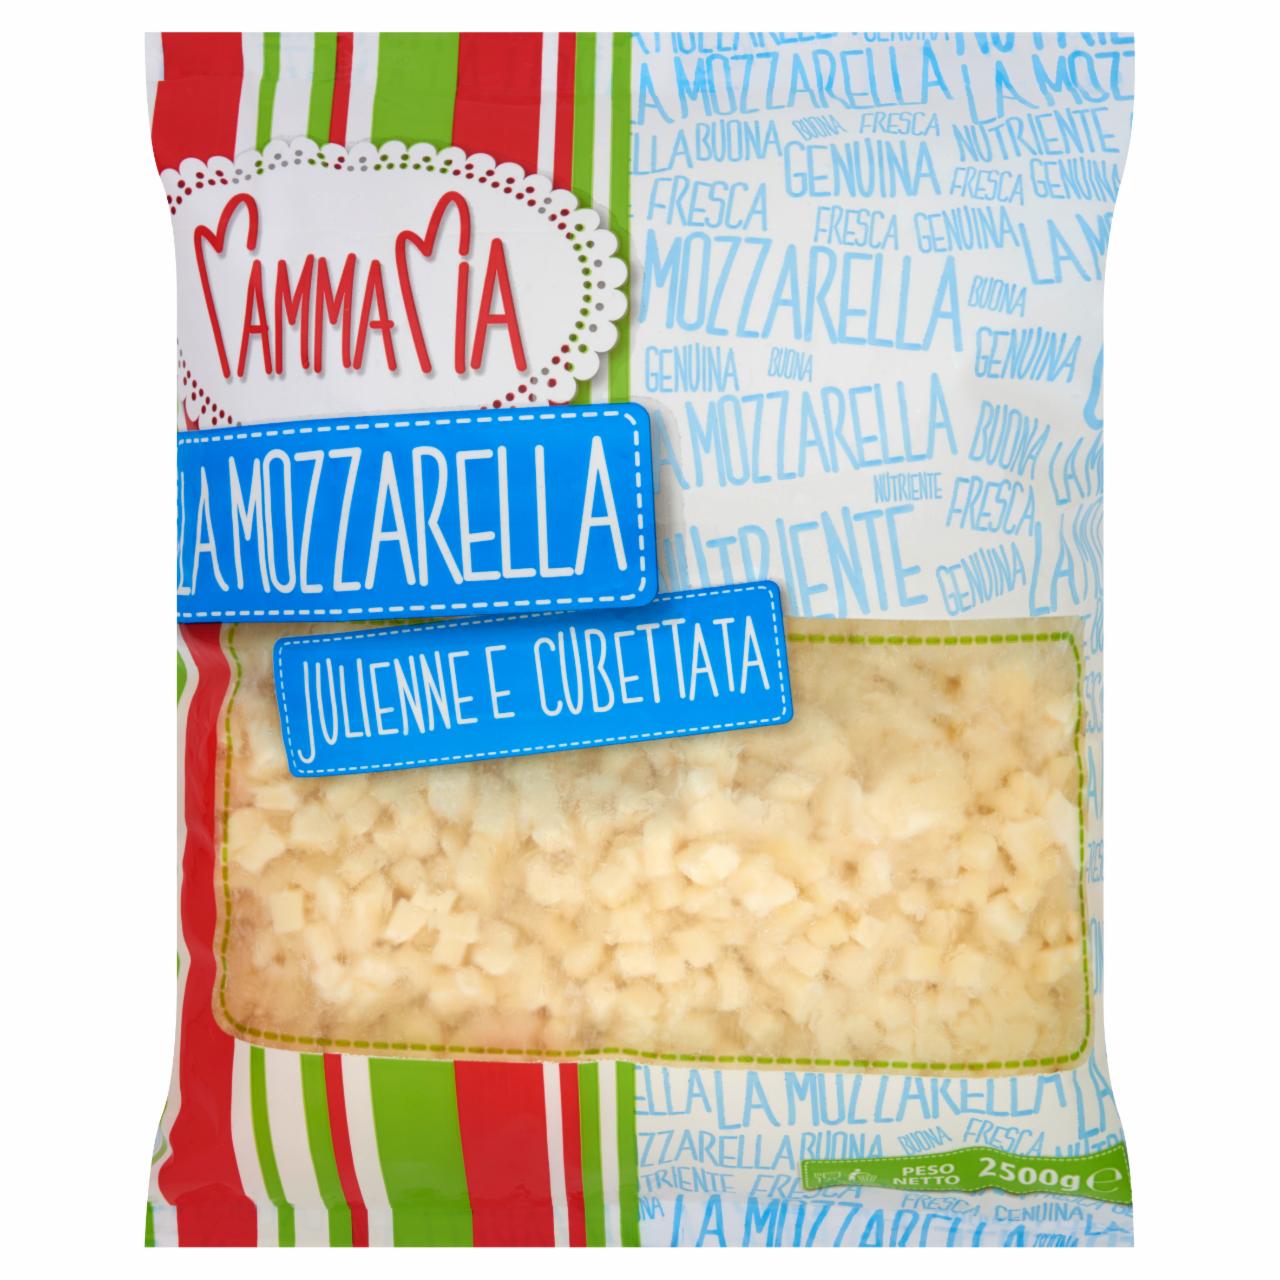 Képek - Mamma Mia La Mozzarella cubettata zsíros, félkemény, kockázott, hevített-gyúrt sajt 2500 g